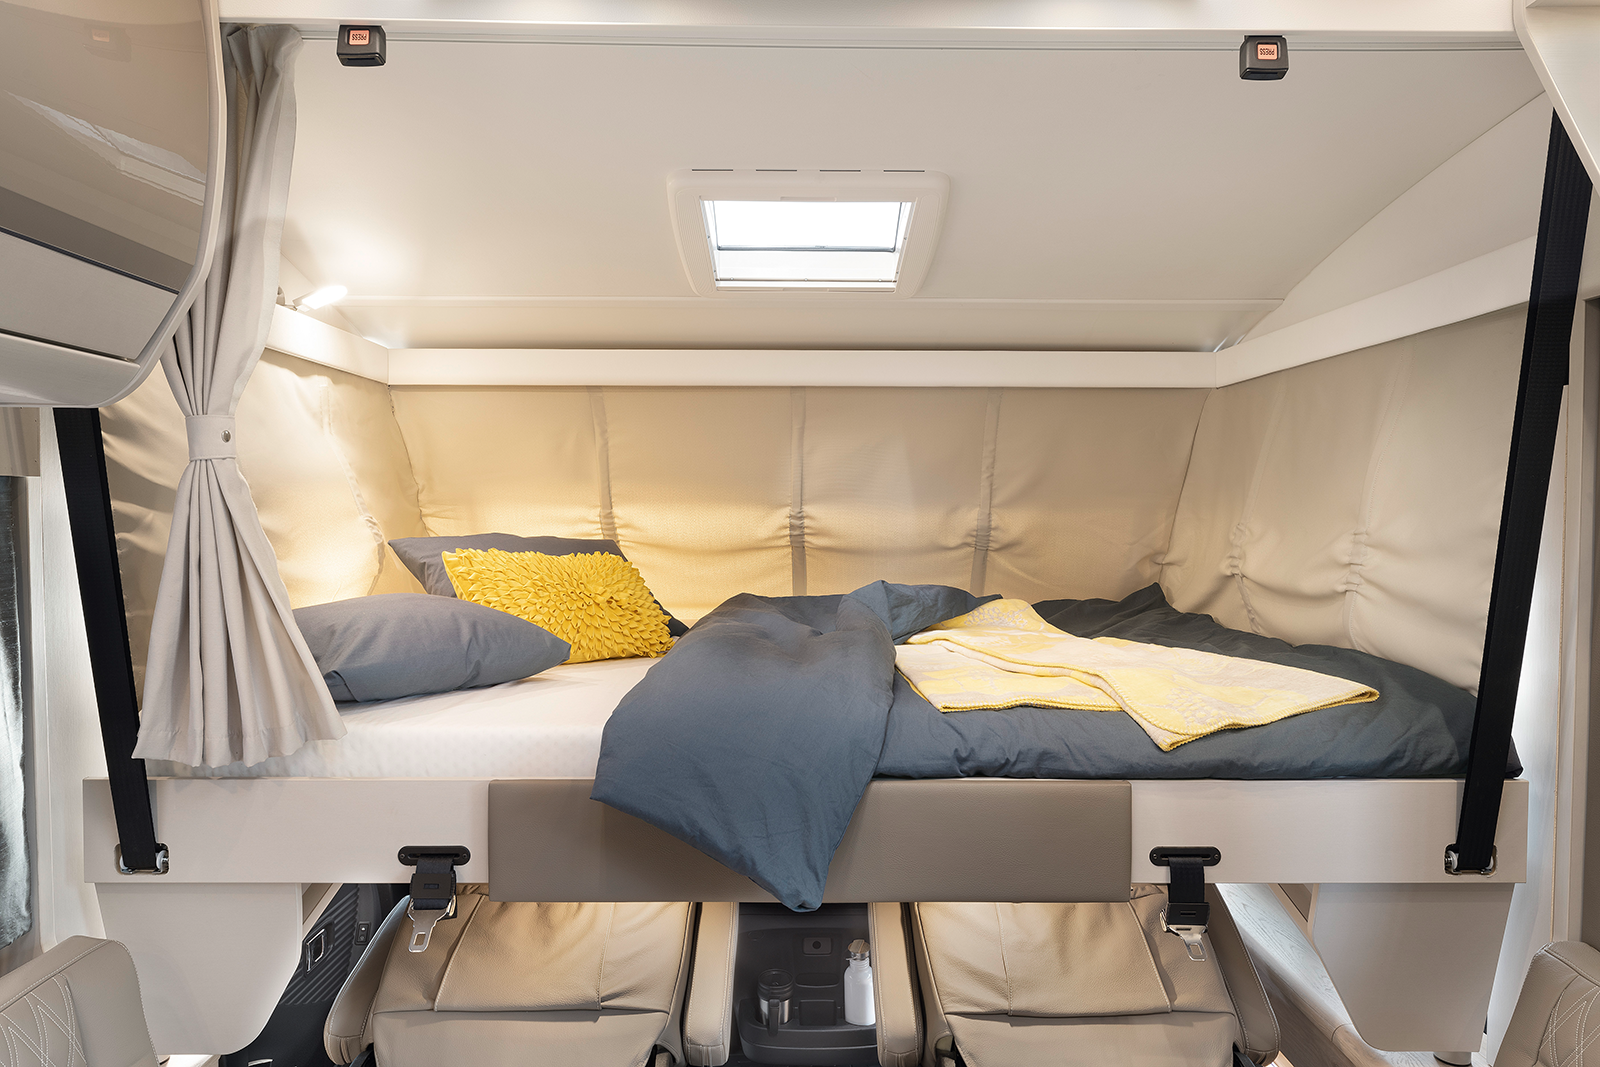 Schlafkomfort vom Feinsten in den Hubbetten der Integrierten mit 200 x 150 cm Liegefläche – serienmässig elektrisch bedienbar